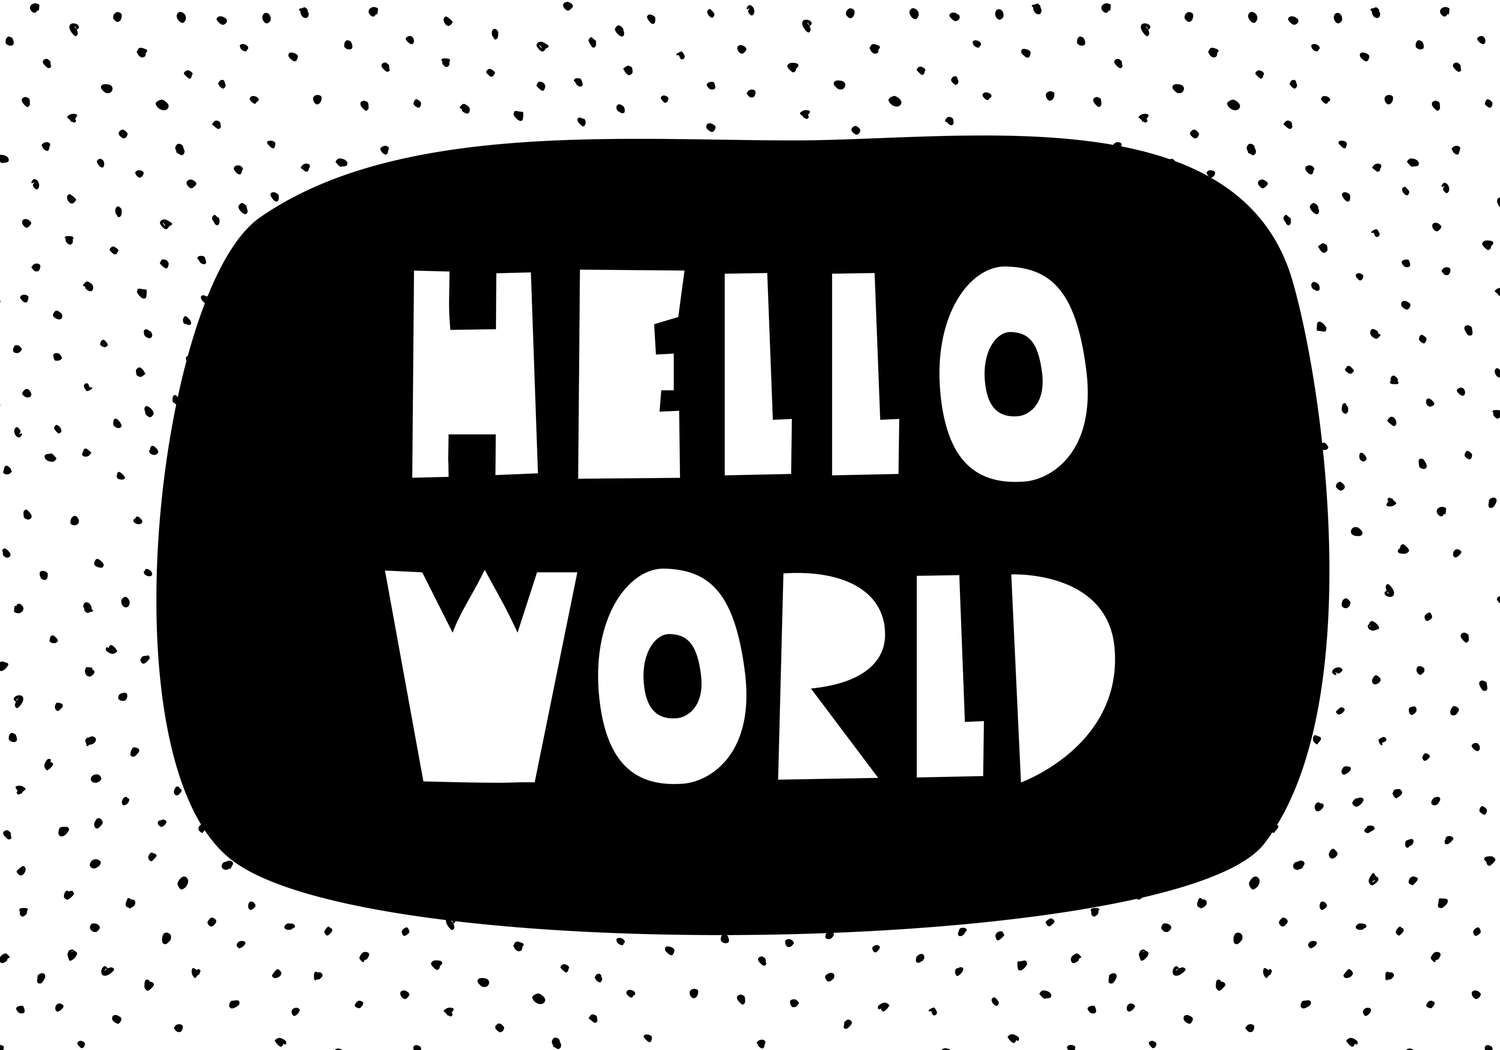             Fototapete fürs Kinderzimmer mit Schriftzug "Hello World" – Strukturiertes Vlies
        